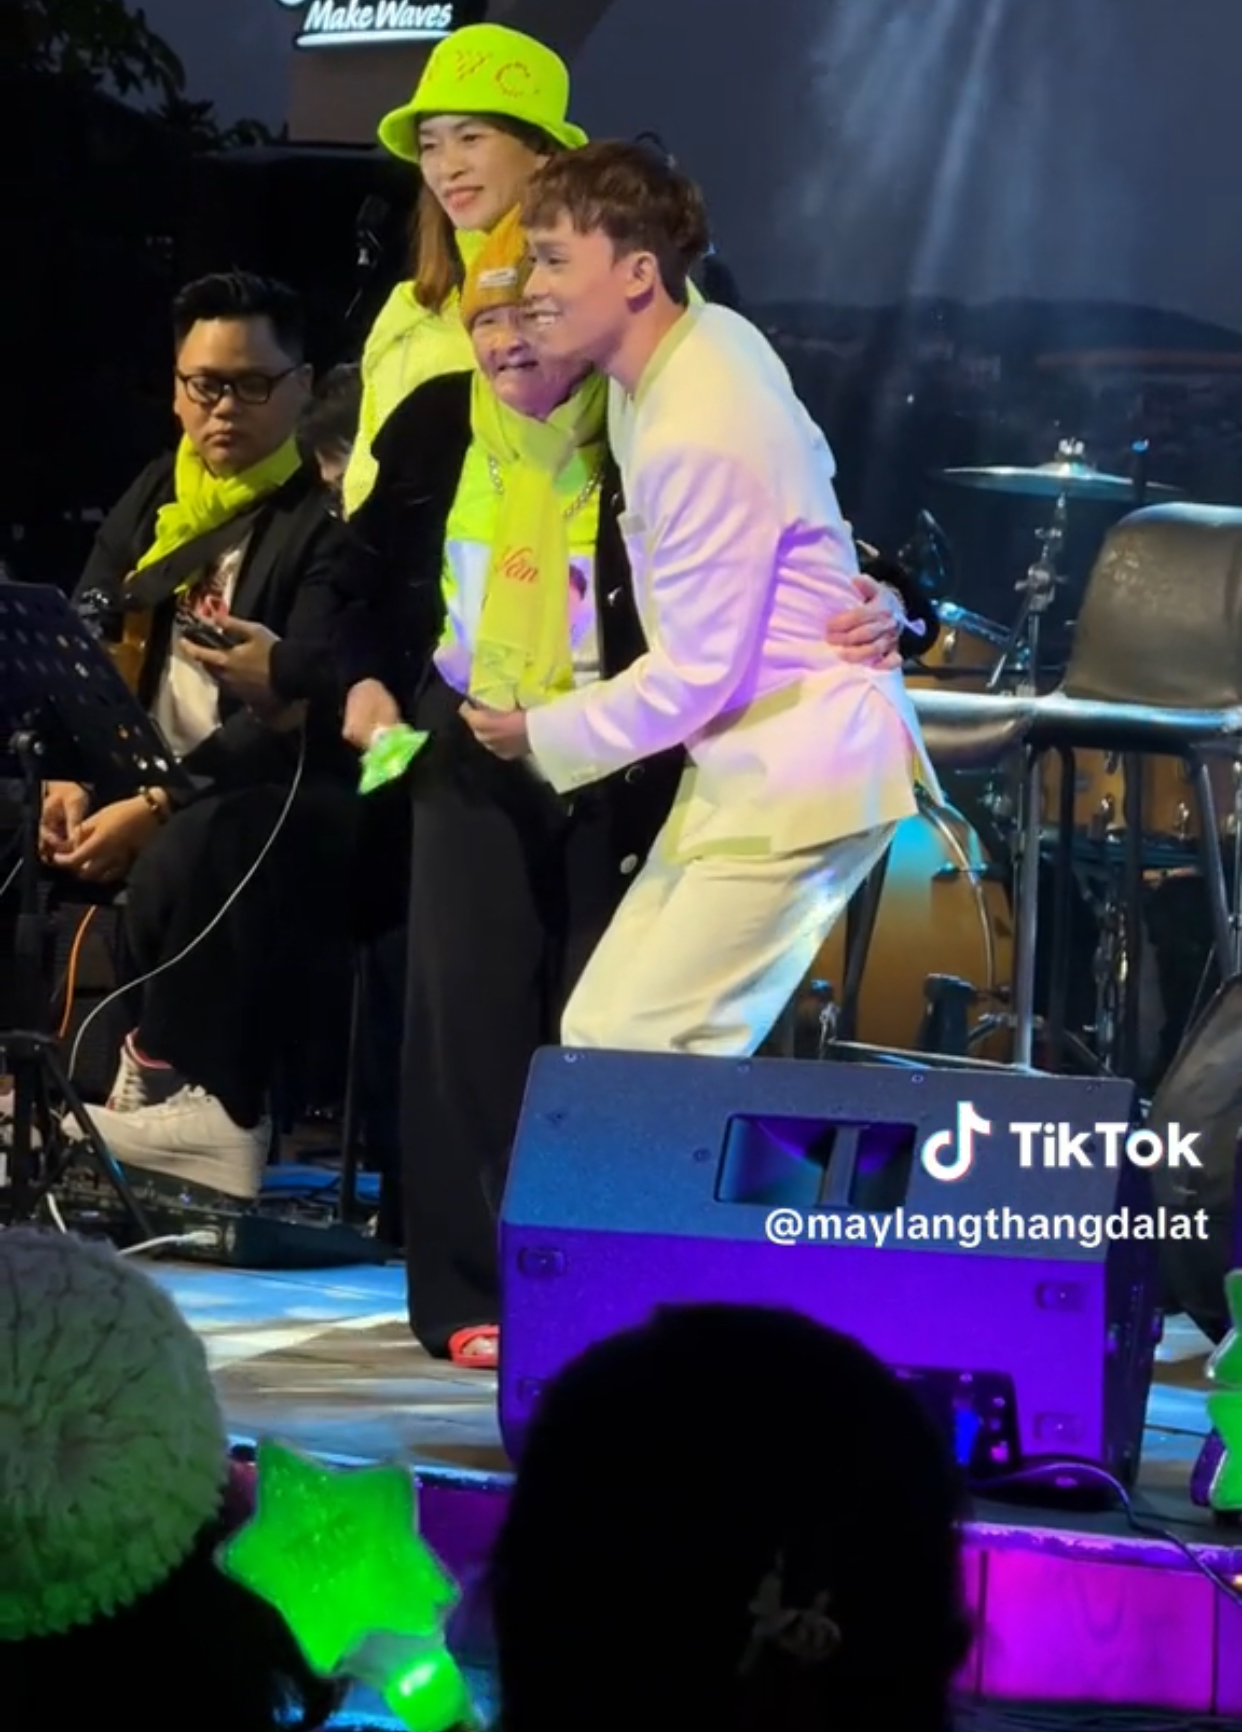 Hồ Văn Cường ghi điểm bởi hành động đẹp khi được fan 85 tuổi tặng tiền trên sân khấu - Ảnh 4